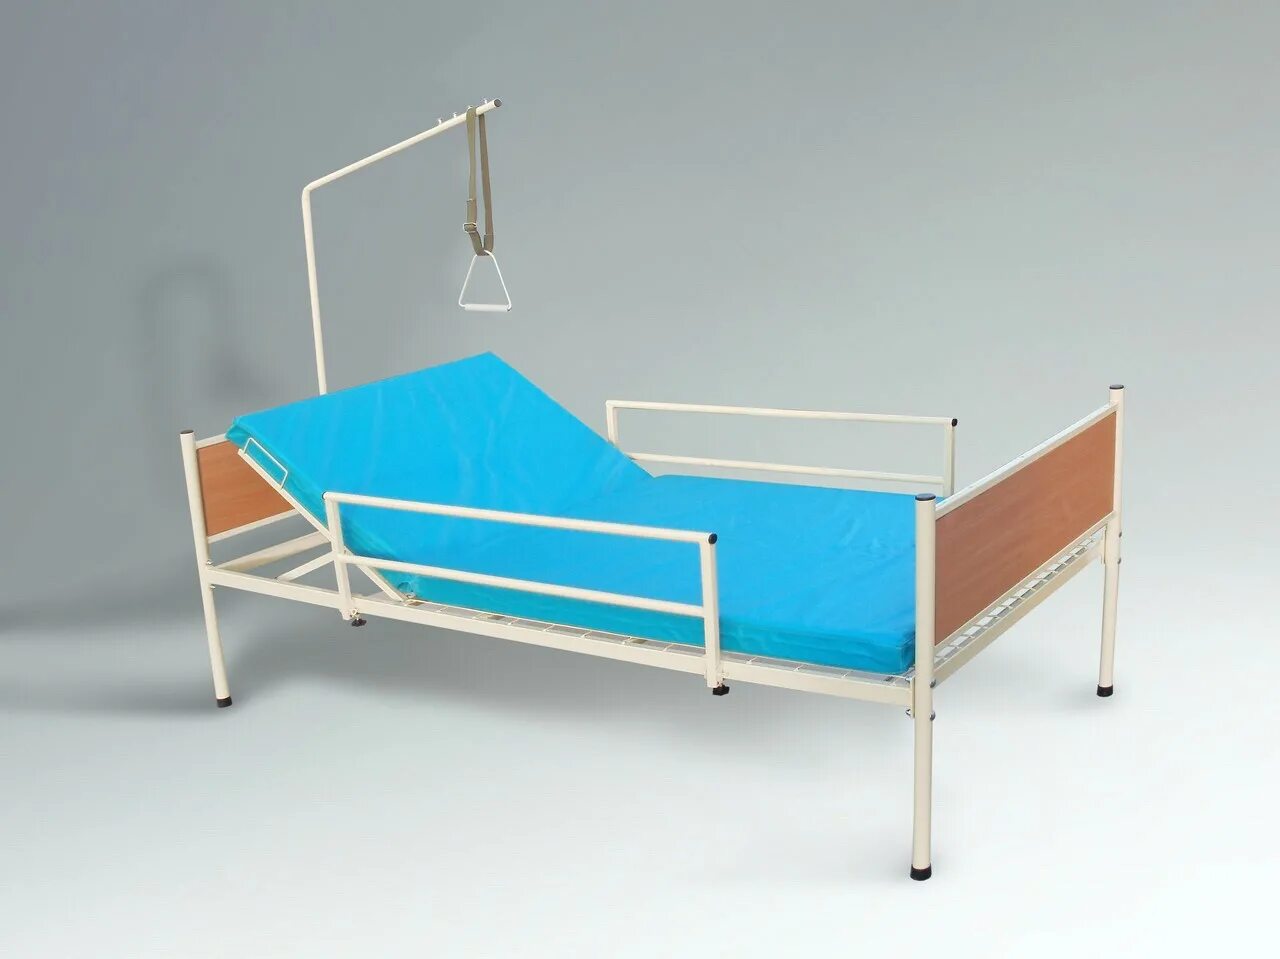 Авито купить медицинскую кровать для лежачих больных. Кровать медицинская 2х функциональная Саиканг. Кровать медицинская двухсекционная крмп. Кровать для лежачих больных модель 092021. Функциональные кровати ELG 197 для лежачих больных.